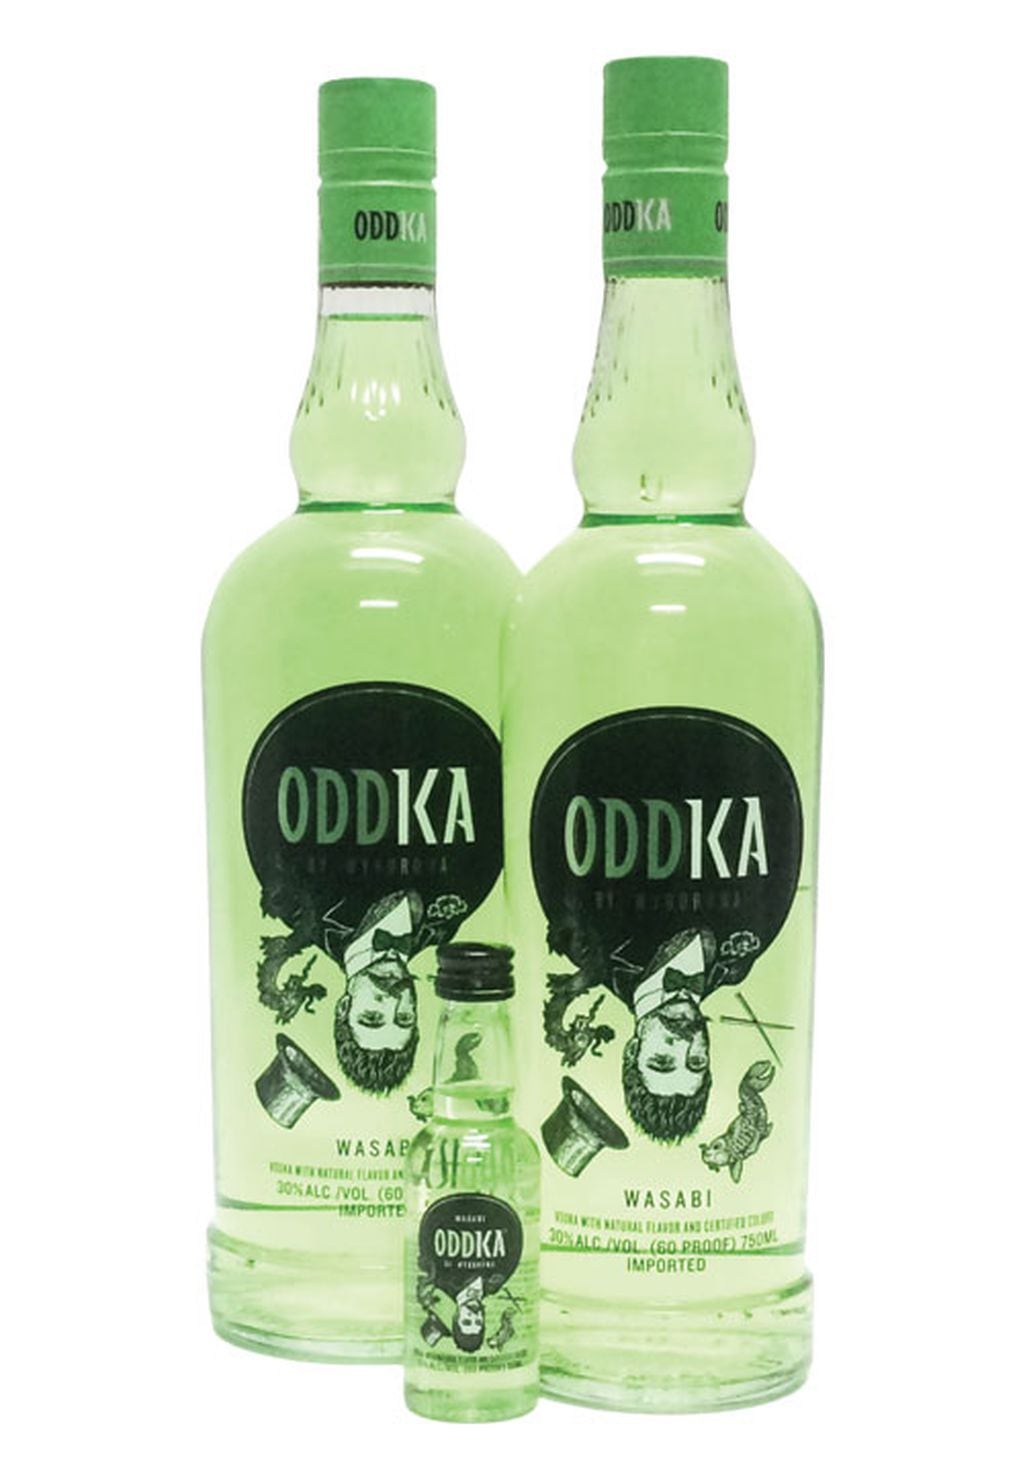 Vodka Oddka con Wasabi.